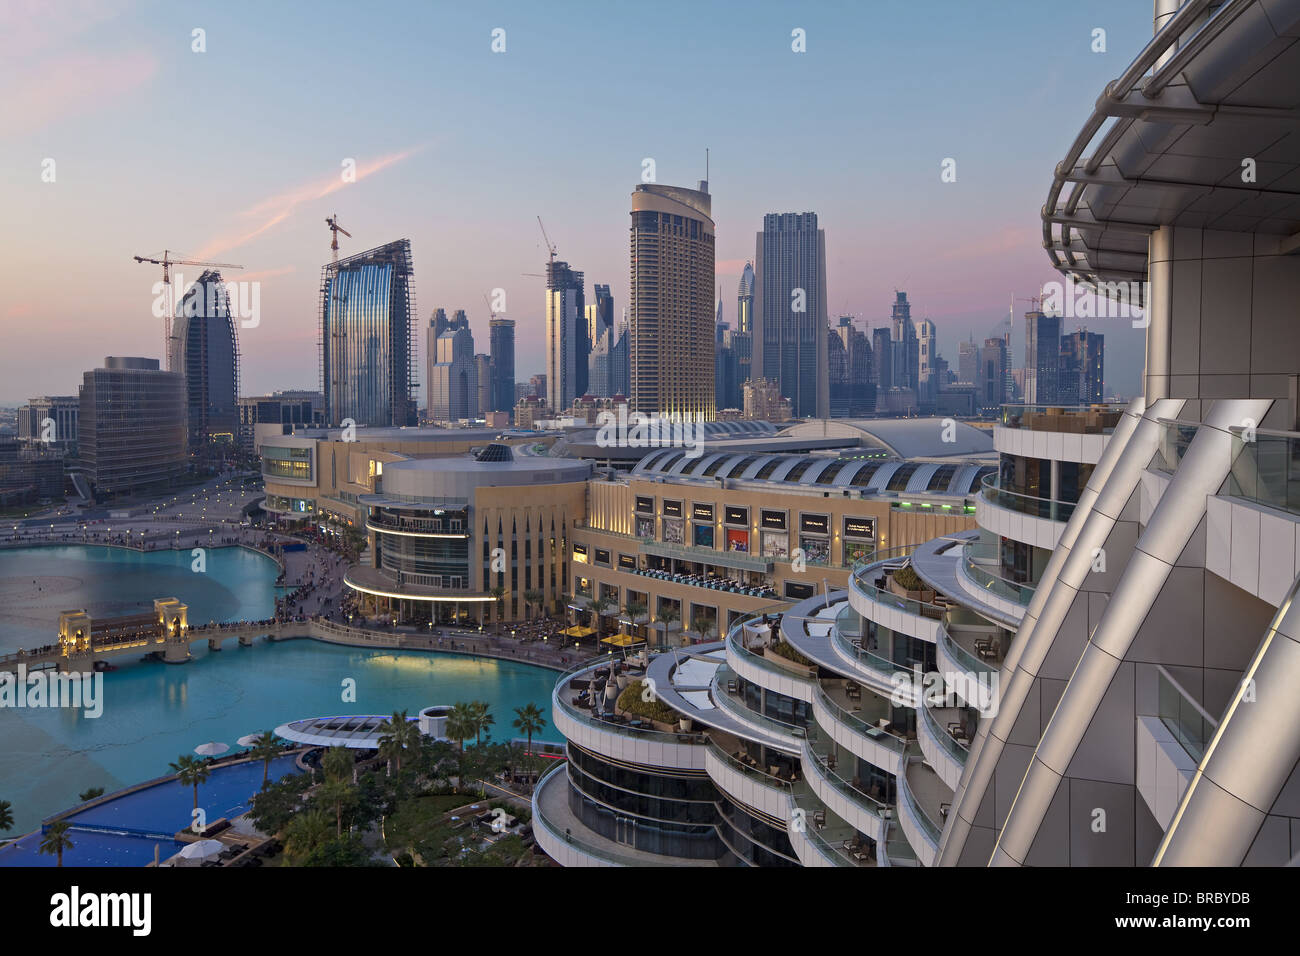 Dubai skyline, elevated view over the Dubai Mall and Burj Khalifa Park, Dubai, UAE Stock Photo